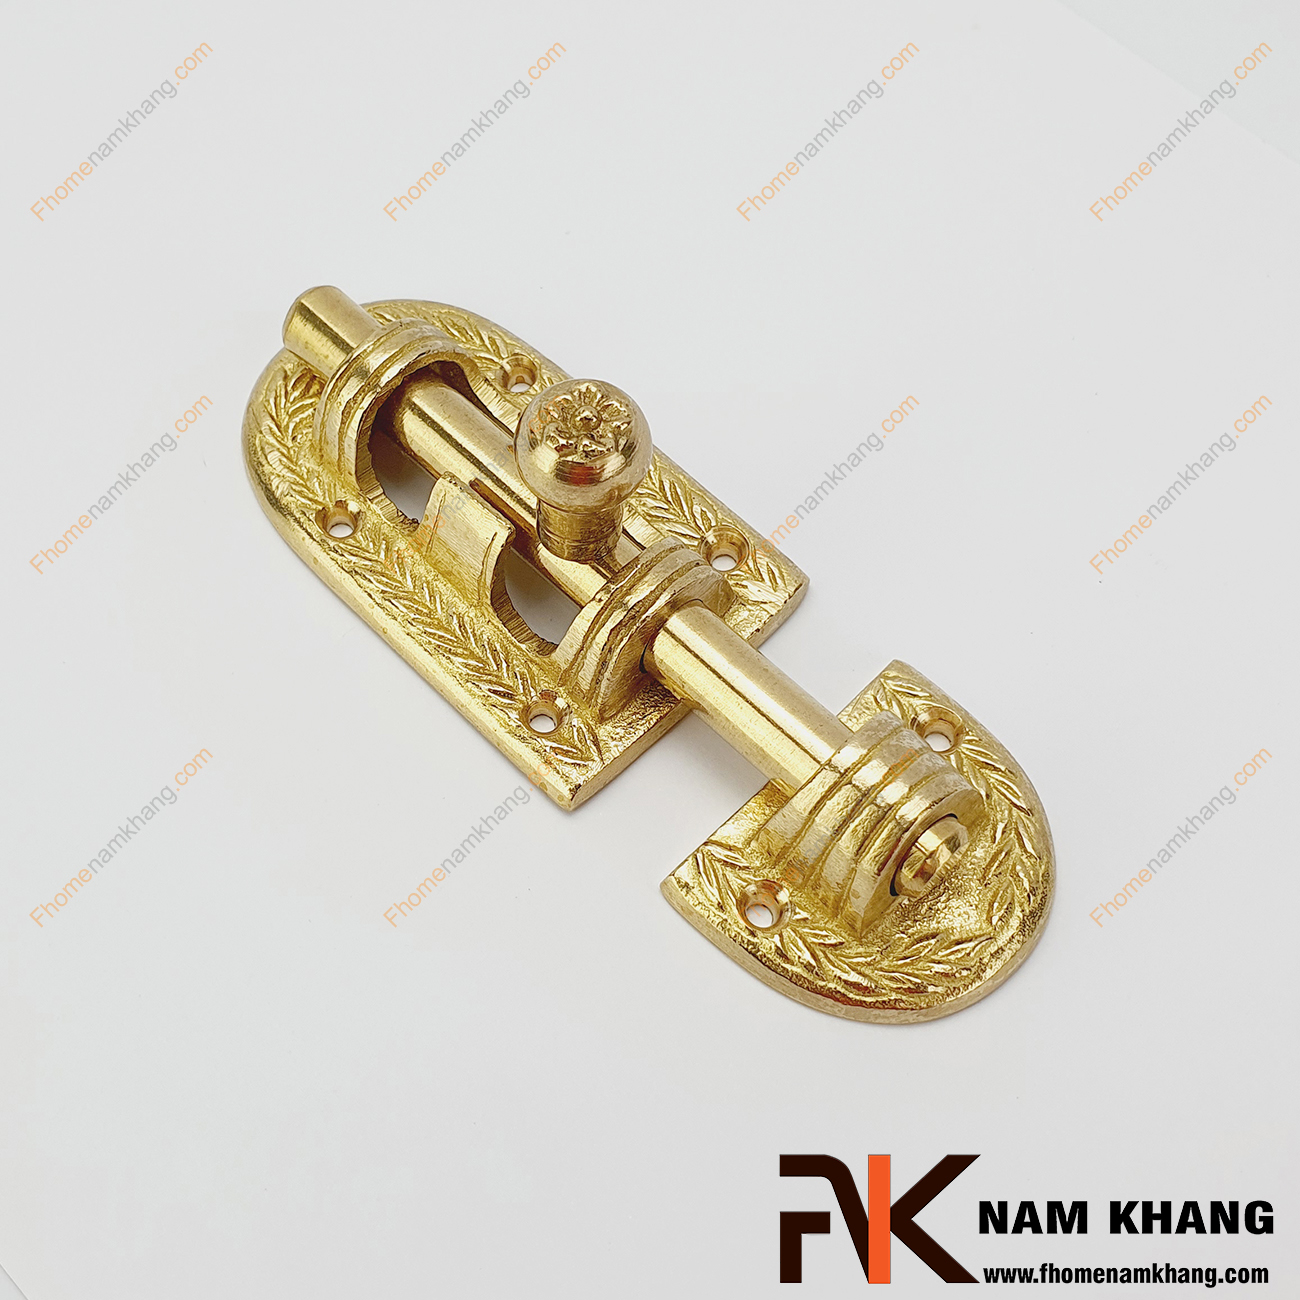 Chốt cửa bằng đồng màu đồng vàng NKD083 là một dạng phụ kiện thường dùng trên các dạng cánh cửa tủ và cửa chính với mục đích khóa giữ cách cửa thông qua cơ cấu khóa đơn giản.